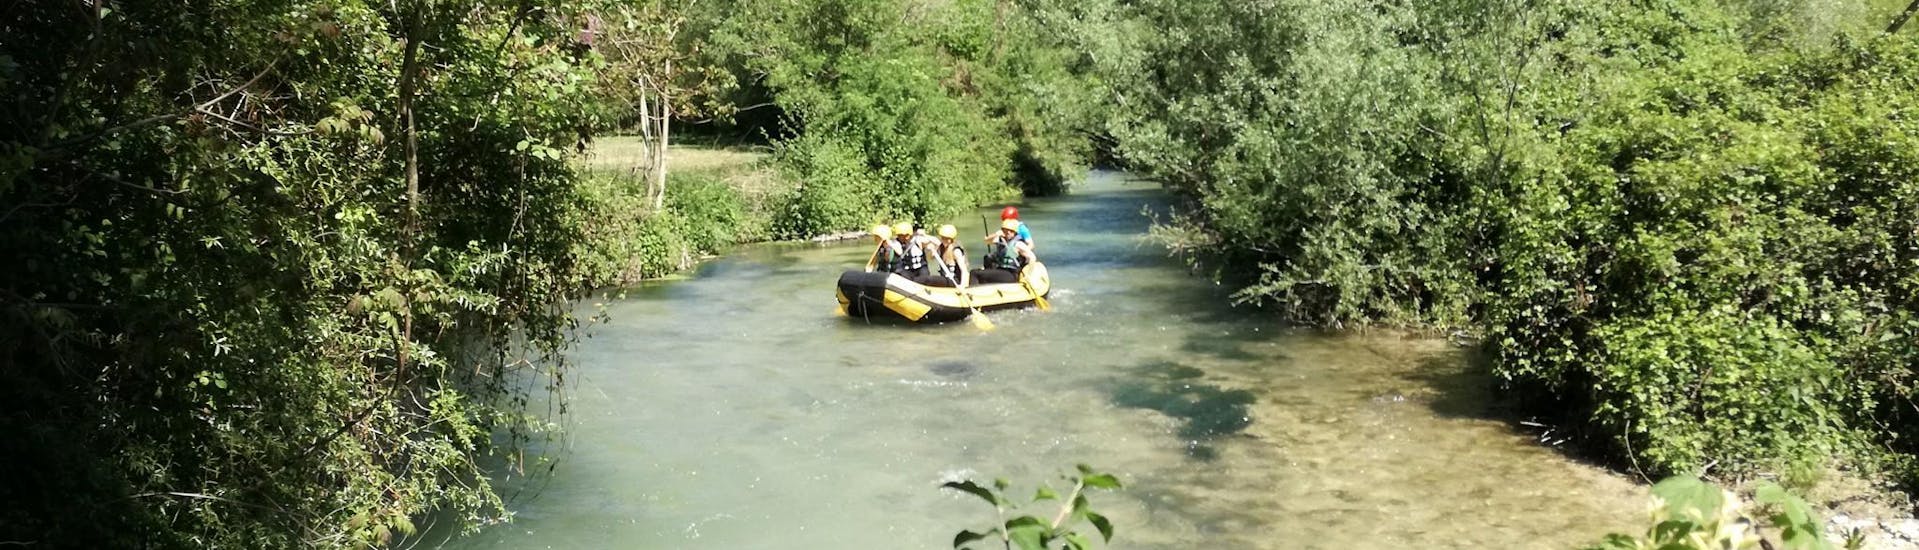 Leichte Rafting-Tour in Vallo di Nera - Nera.